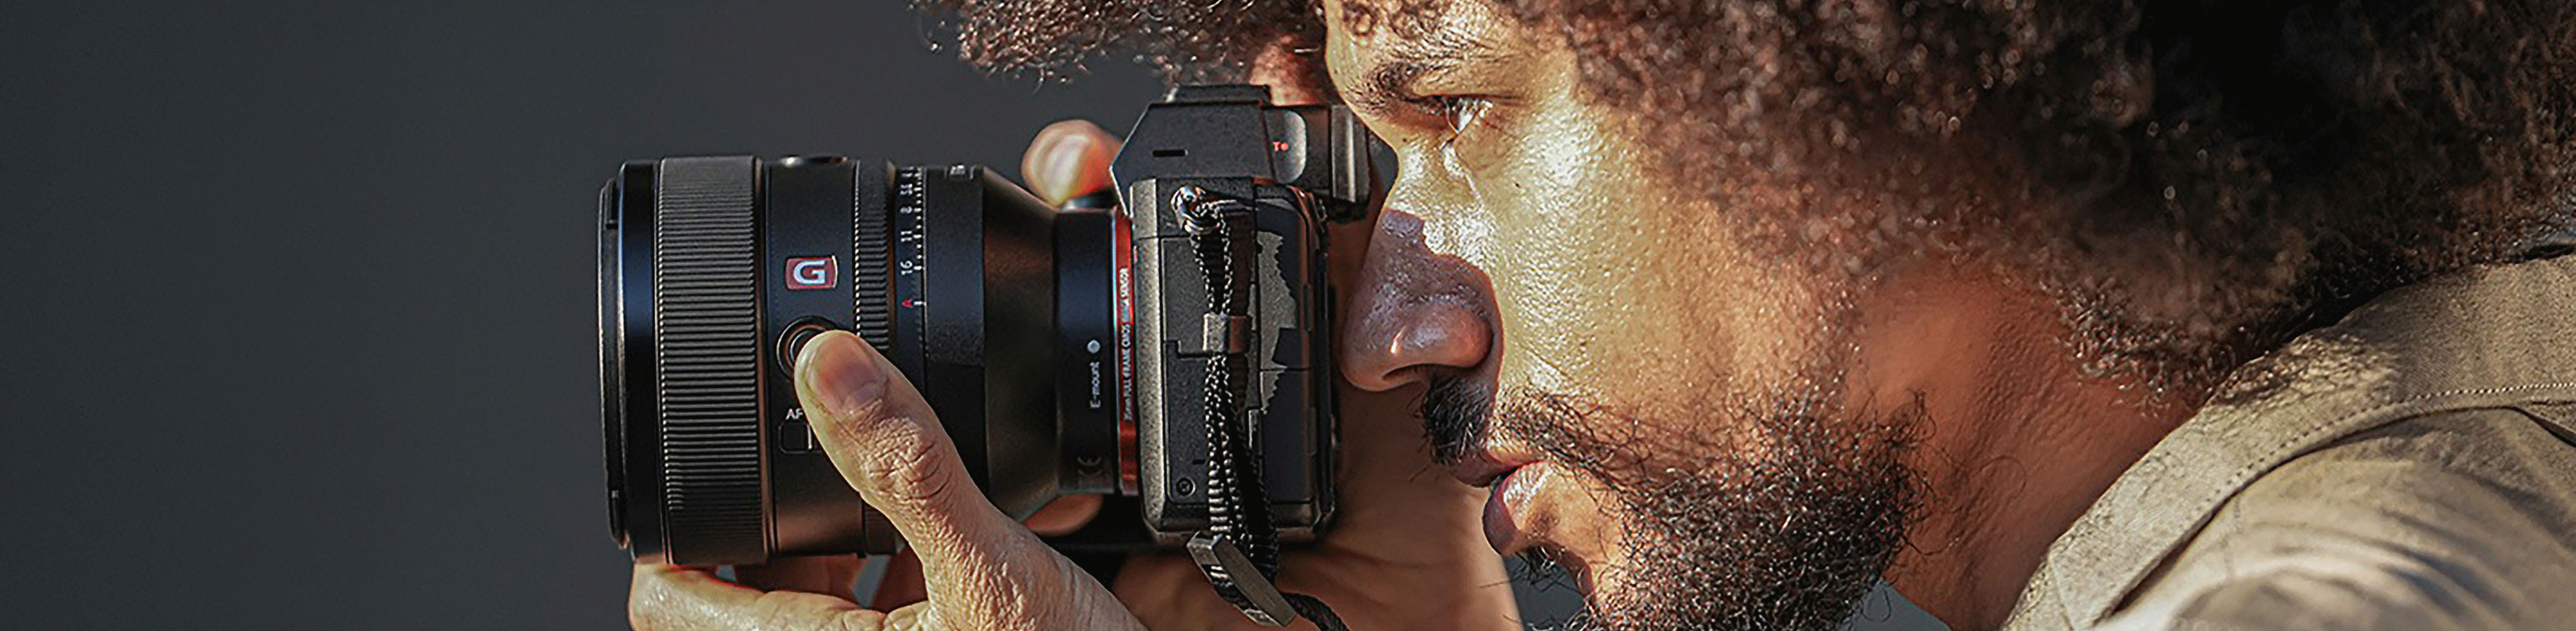 Hình ảnh một người cầm máy ảnh có gắn ống kính FE 50 mm F1.2 GM